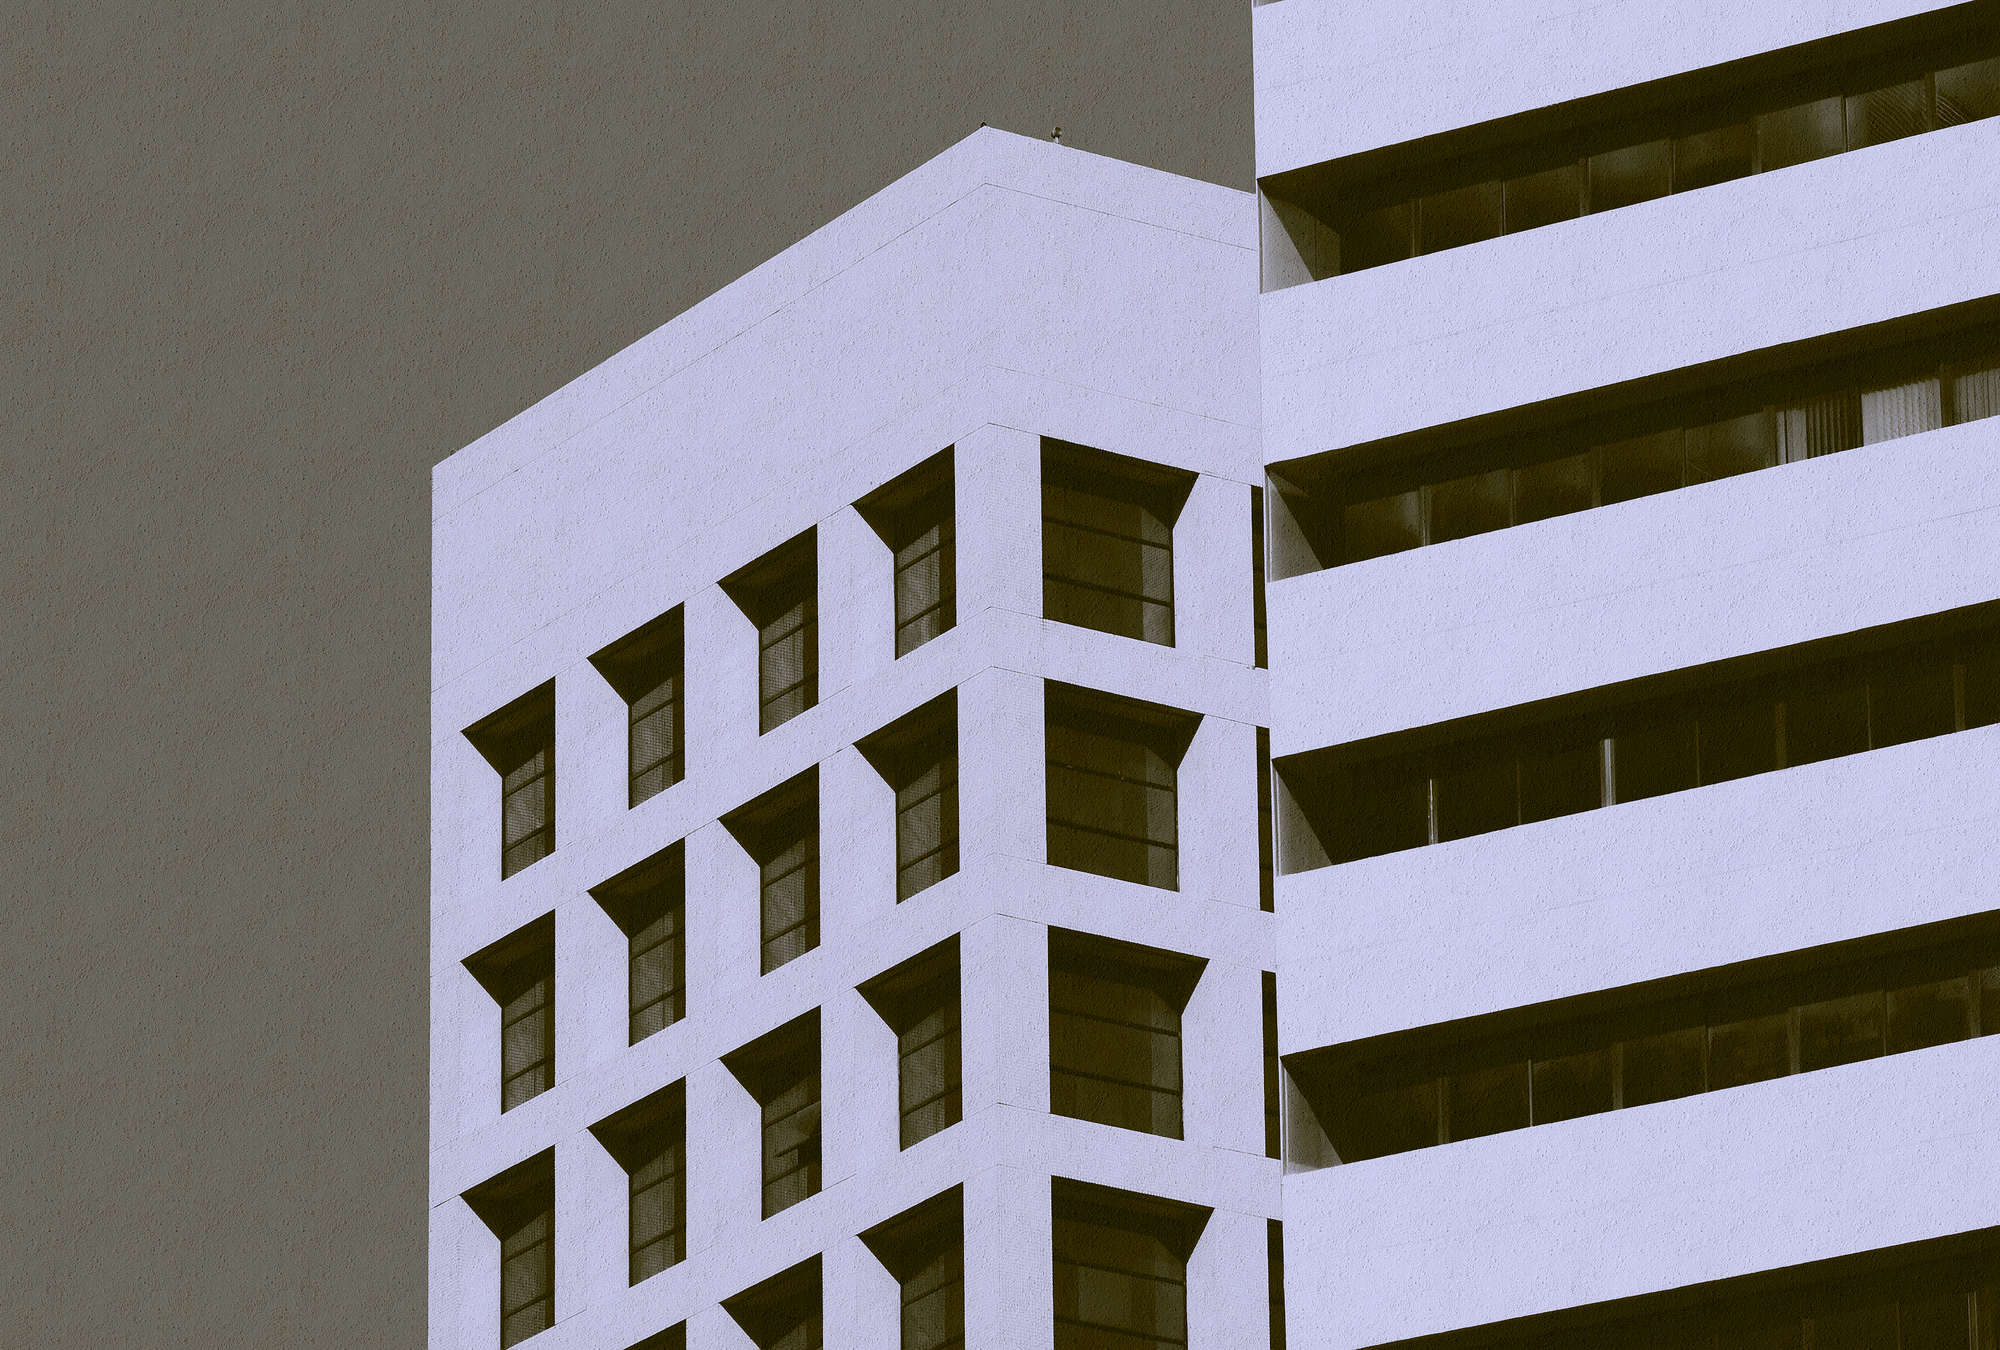             Skyscraper 1 - Fototapete mit Gebäude im Retrolook in Rauputz Struktur – Schwarz, Taupe | Perlmutt Glattvlies
        